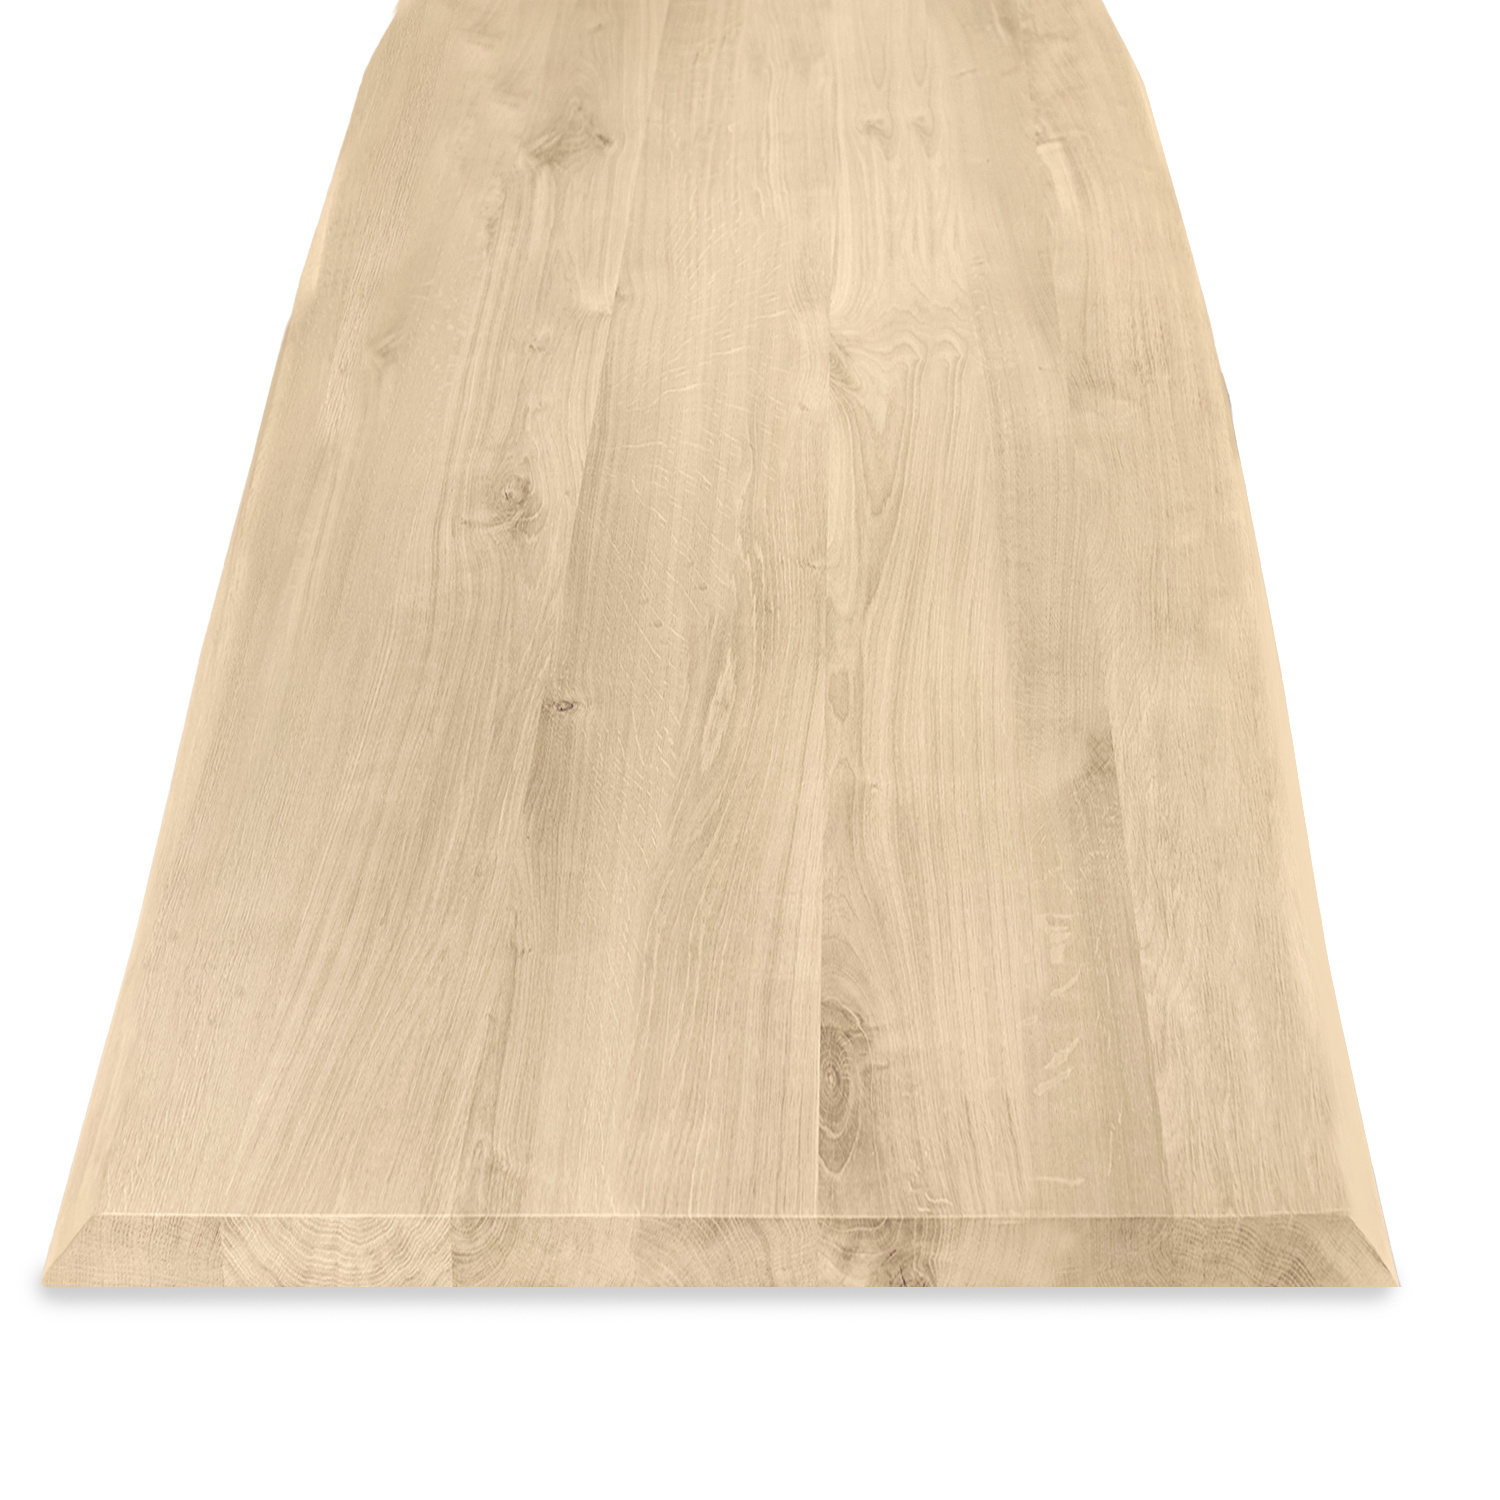  Eiken boomstam tafelblad - 4 cm dik (1-laag) - Diverse afmetingen - met boomstam rand / waankant look - rustiek Europees eikenhout - met brede lamellen (circa 10-12 cm) - verlijmd kd 8-12%